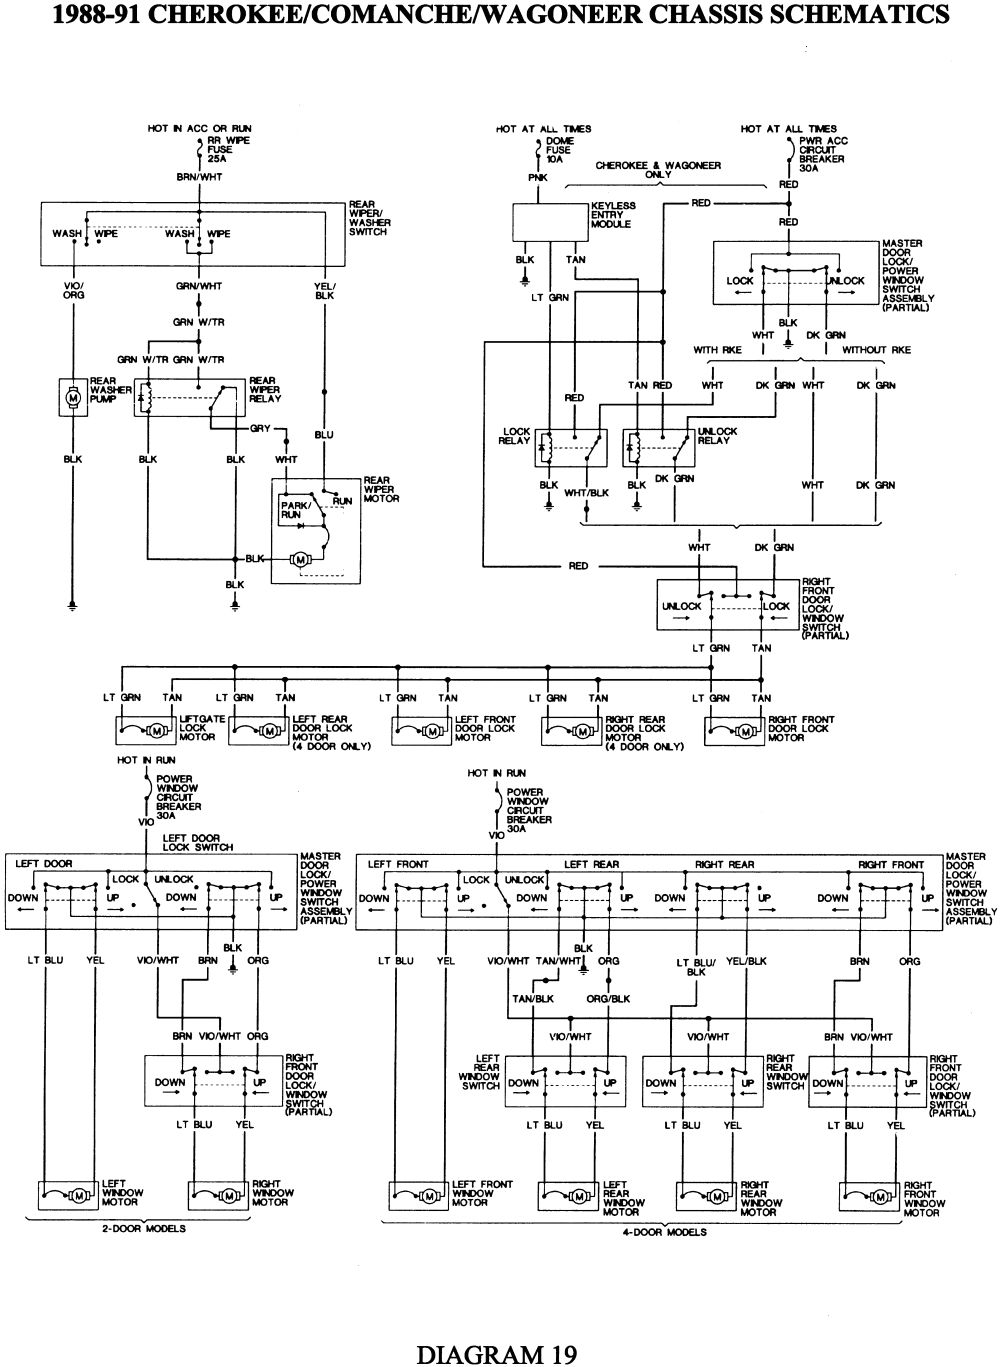 repair guides wiring diagrams see figures 1 through 50 1990 jeep comanche radio wiring diagram 1990 jeep comanche wiring diagram